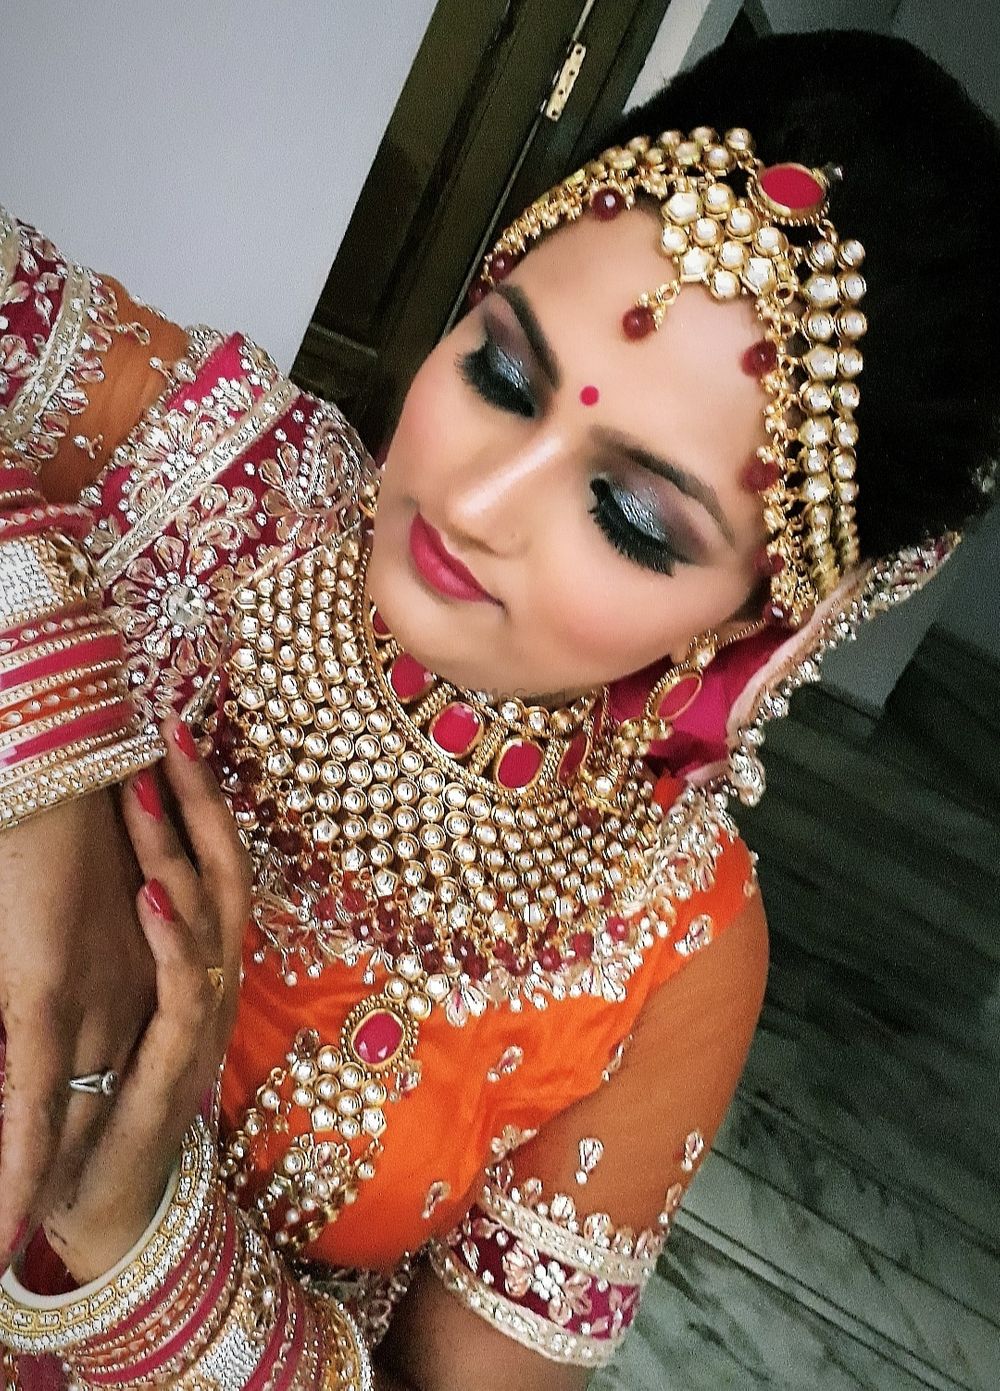 Photo By Gayatri Makeovers - Bridal Makeup